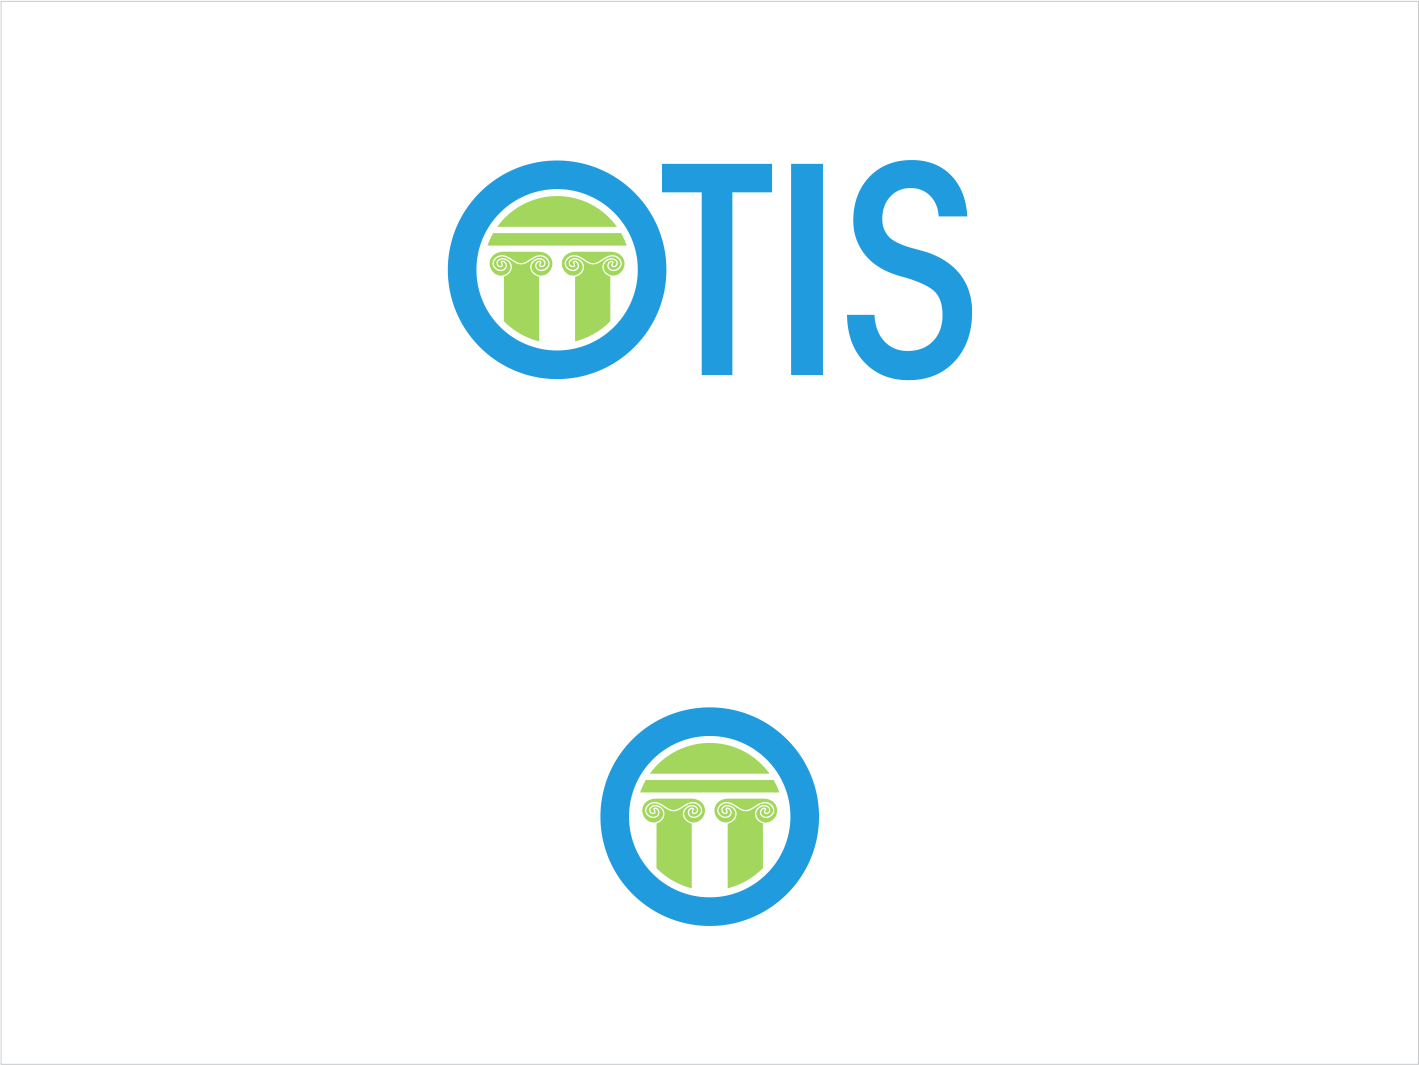 Otis Logo - Serious, Modern, Electric Company Logo Design for OTIS by LNKstudio ...